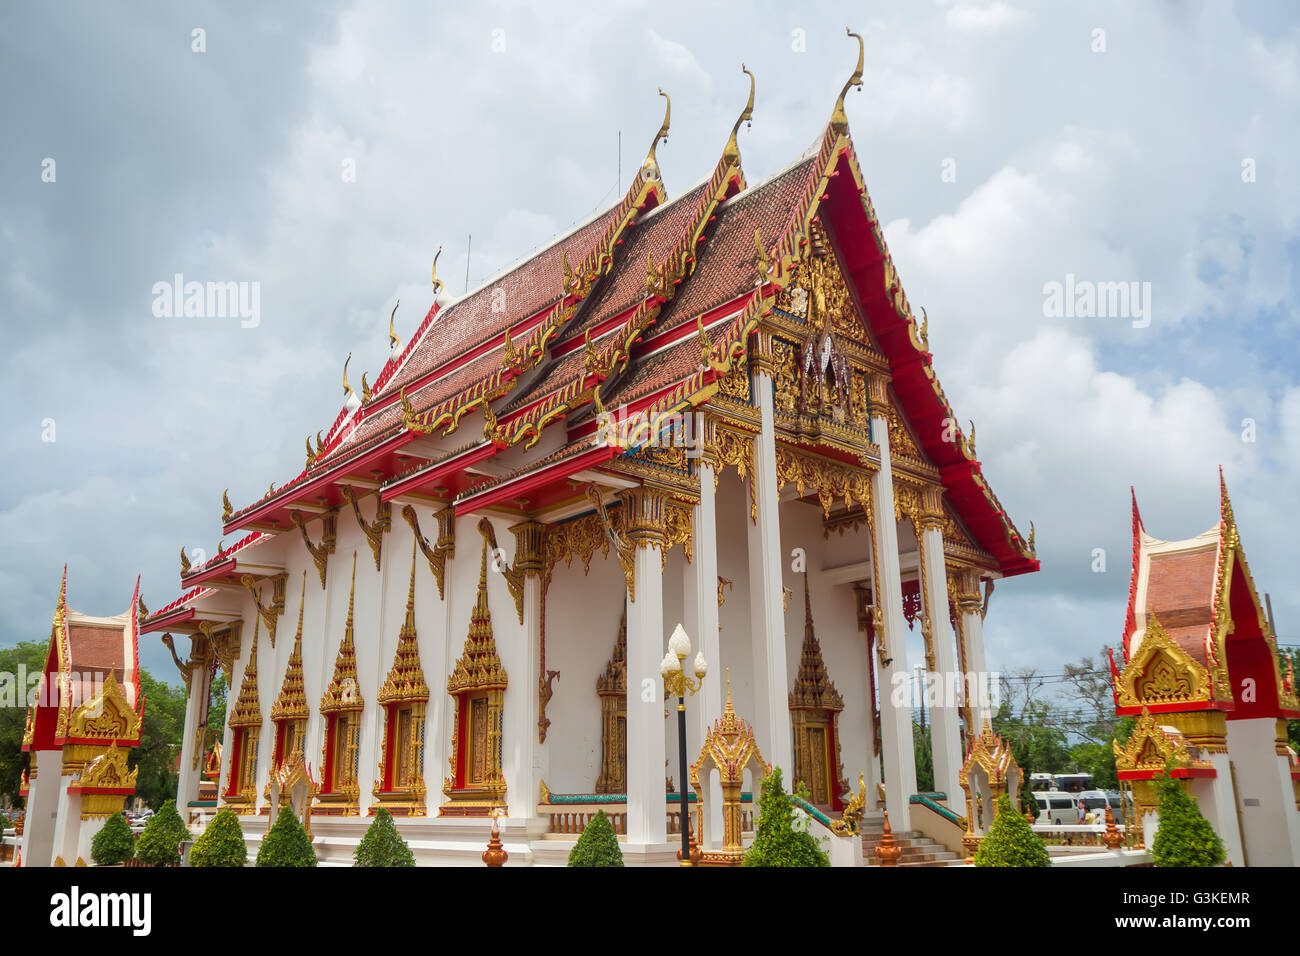 Dans le sanctuaire du Temple de Chalong, Phuket Thaïlande Asie Banque D'Images